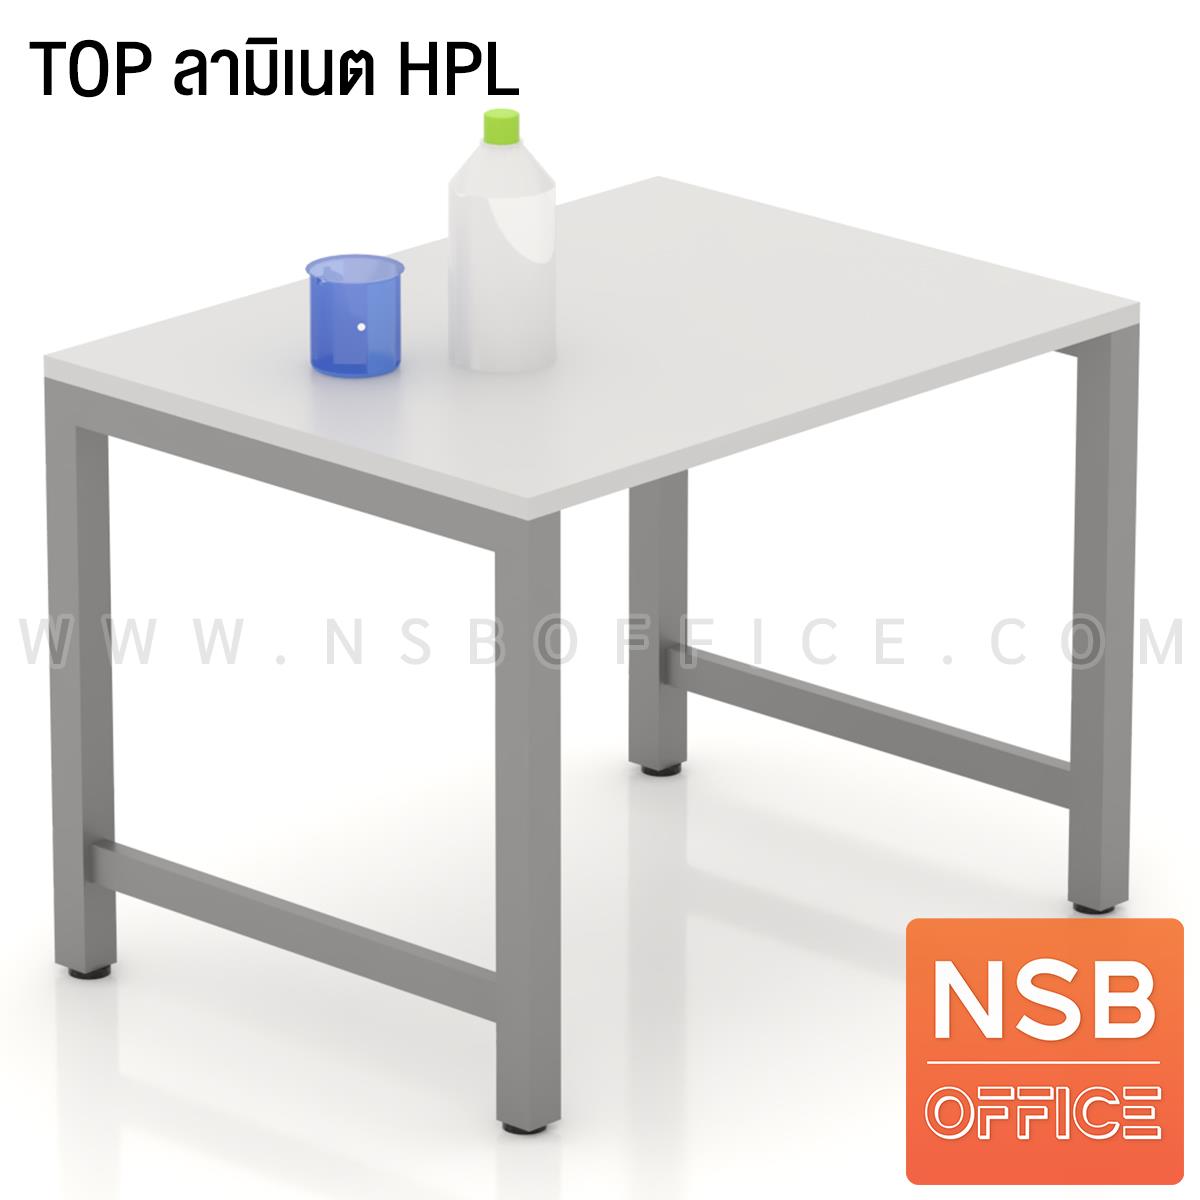 โต๊ะปฏิบัติการ ลึก 75D cm รุ่น Pureflix (เพียวฟลิกซ์) หน้าท็อป HPL และ คอมแพคลามิเนต  ขาเหล็ก